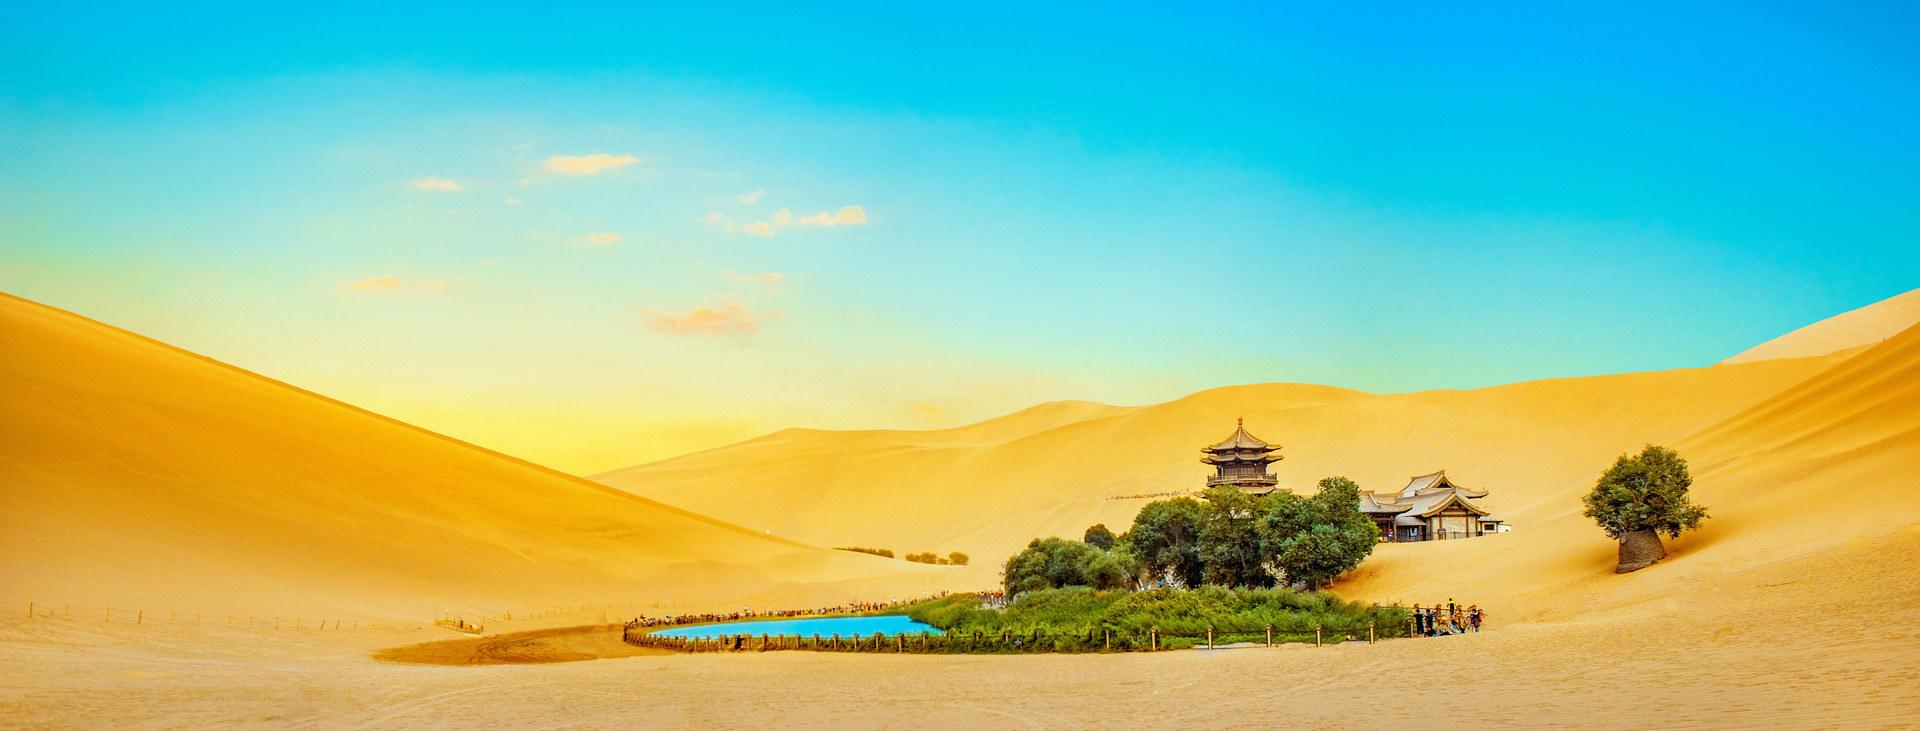 去年甘肃省乡村旅游接待游客8013万人次 实现收入238亿元